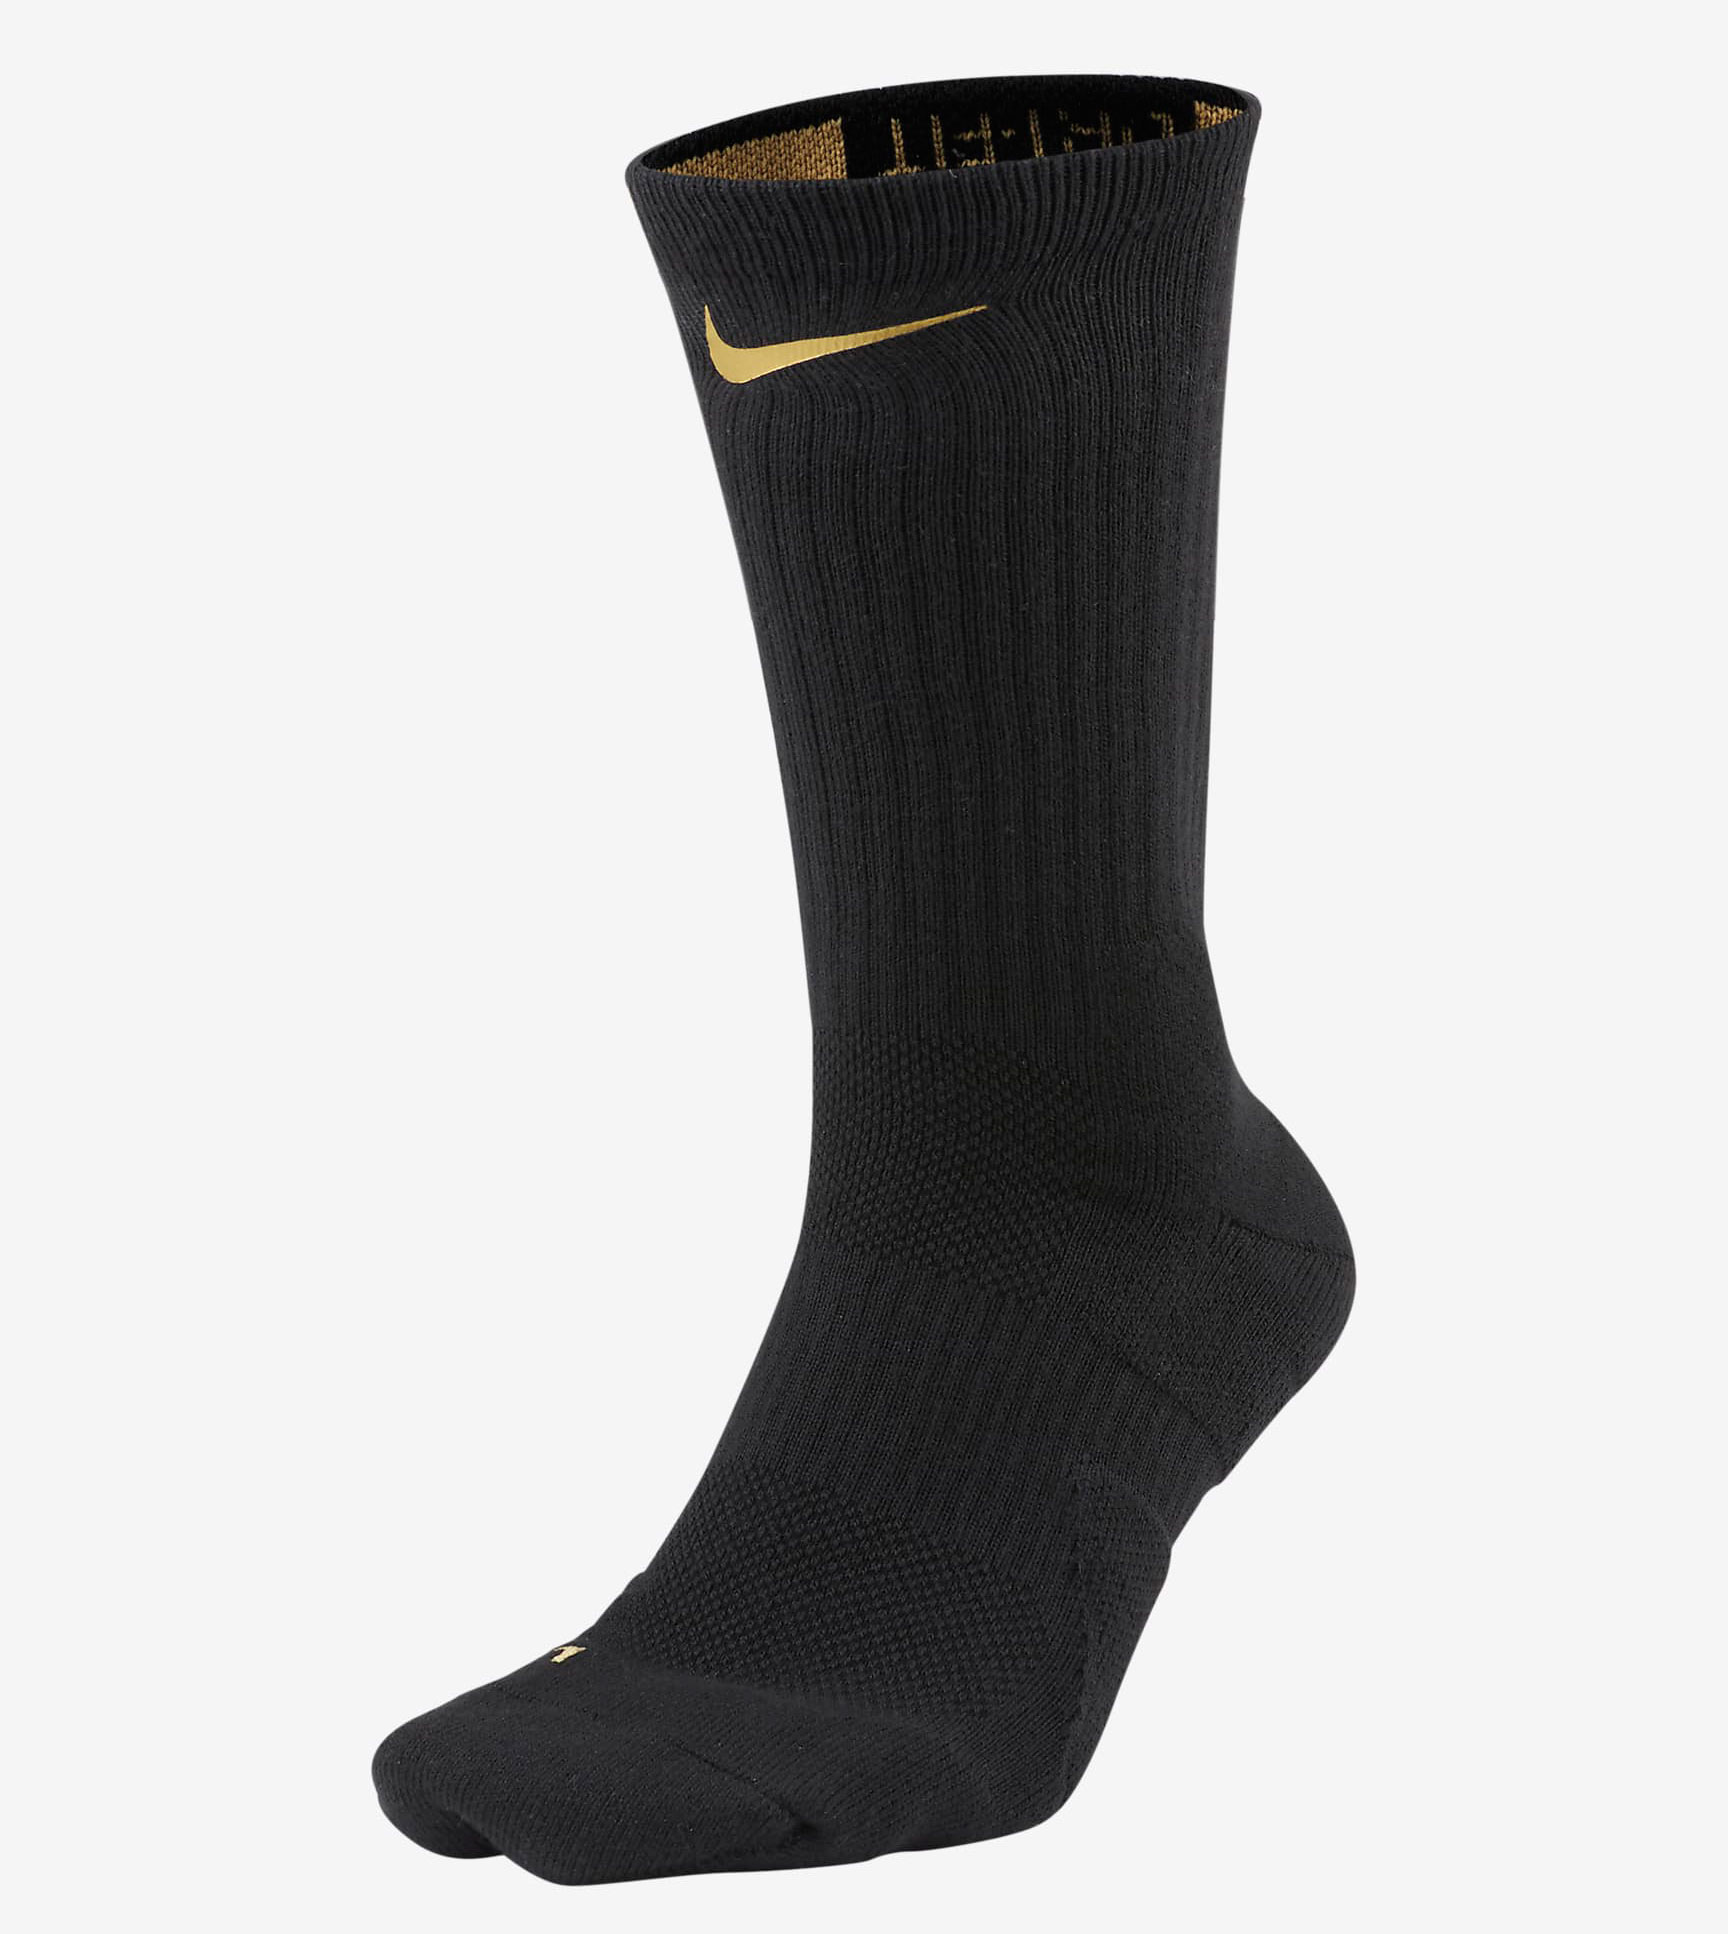 nike-elite-crew-basketball-socks-black-gold-1